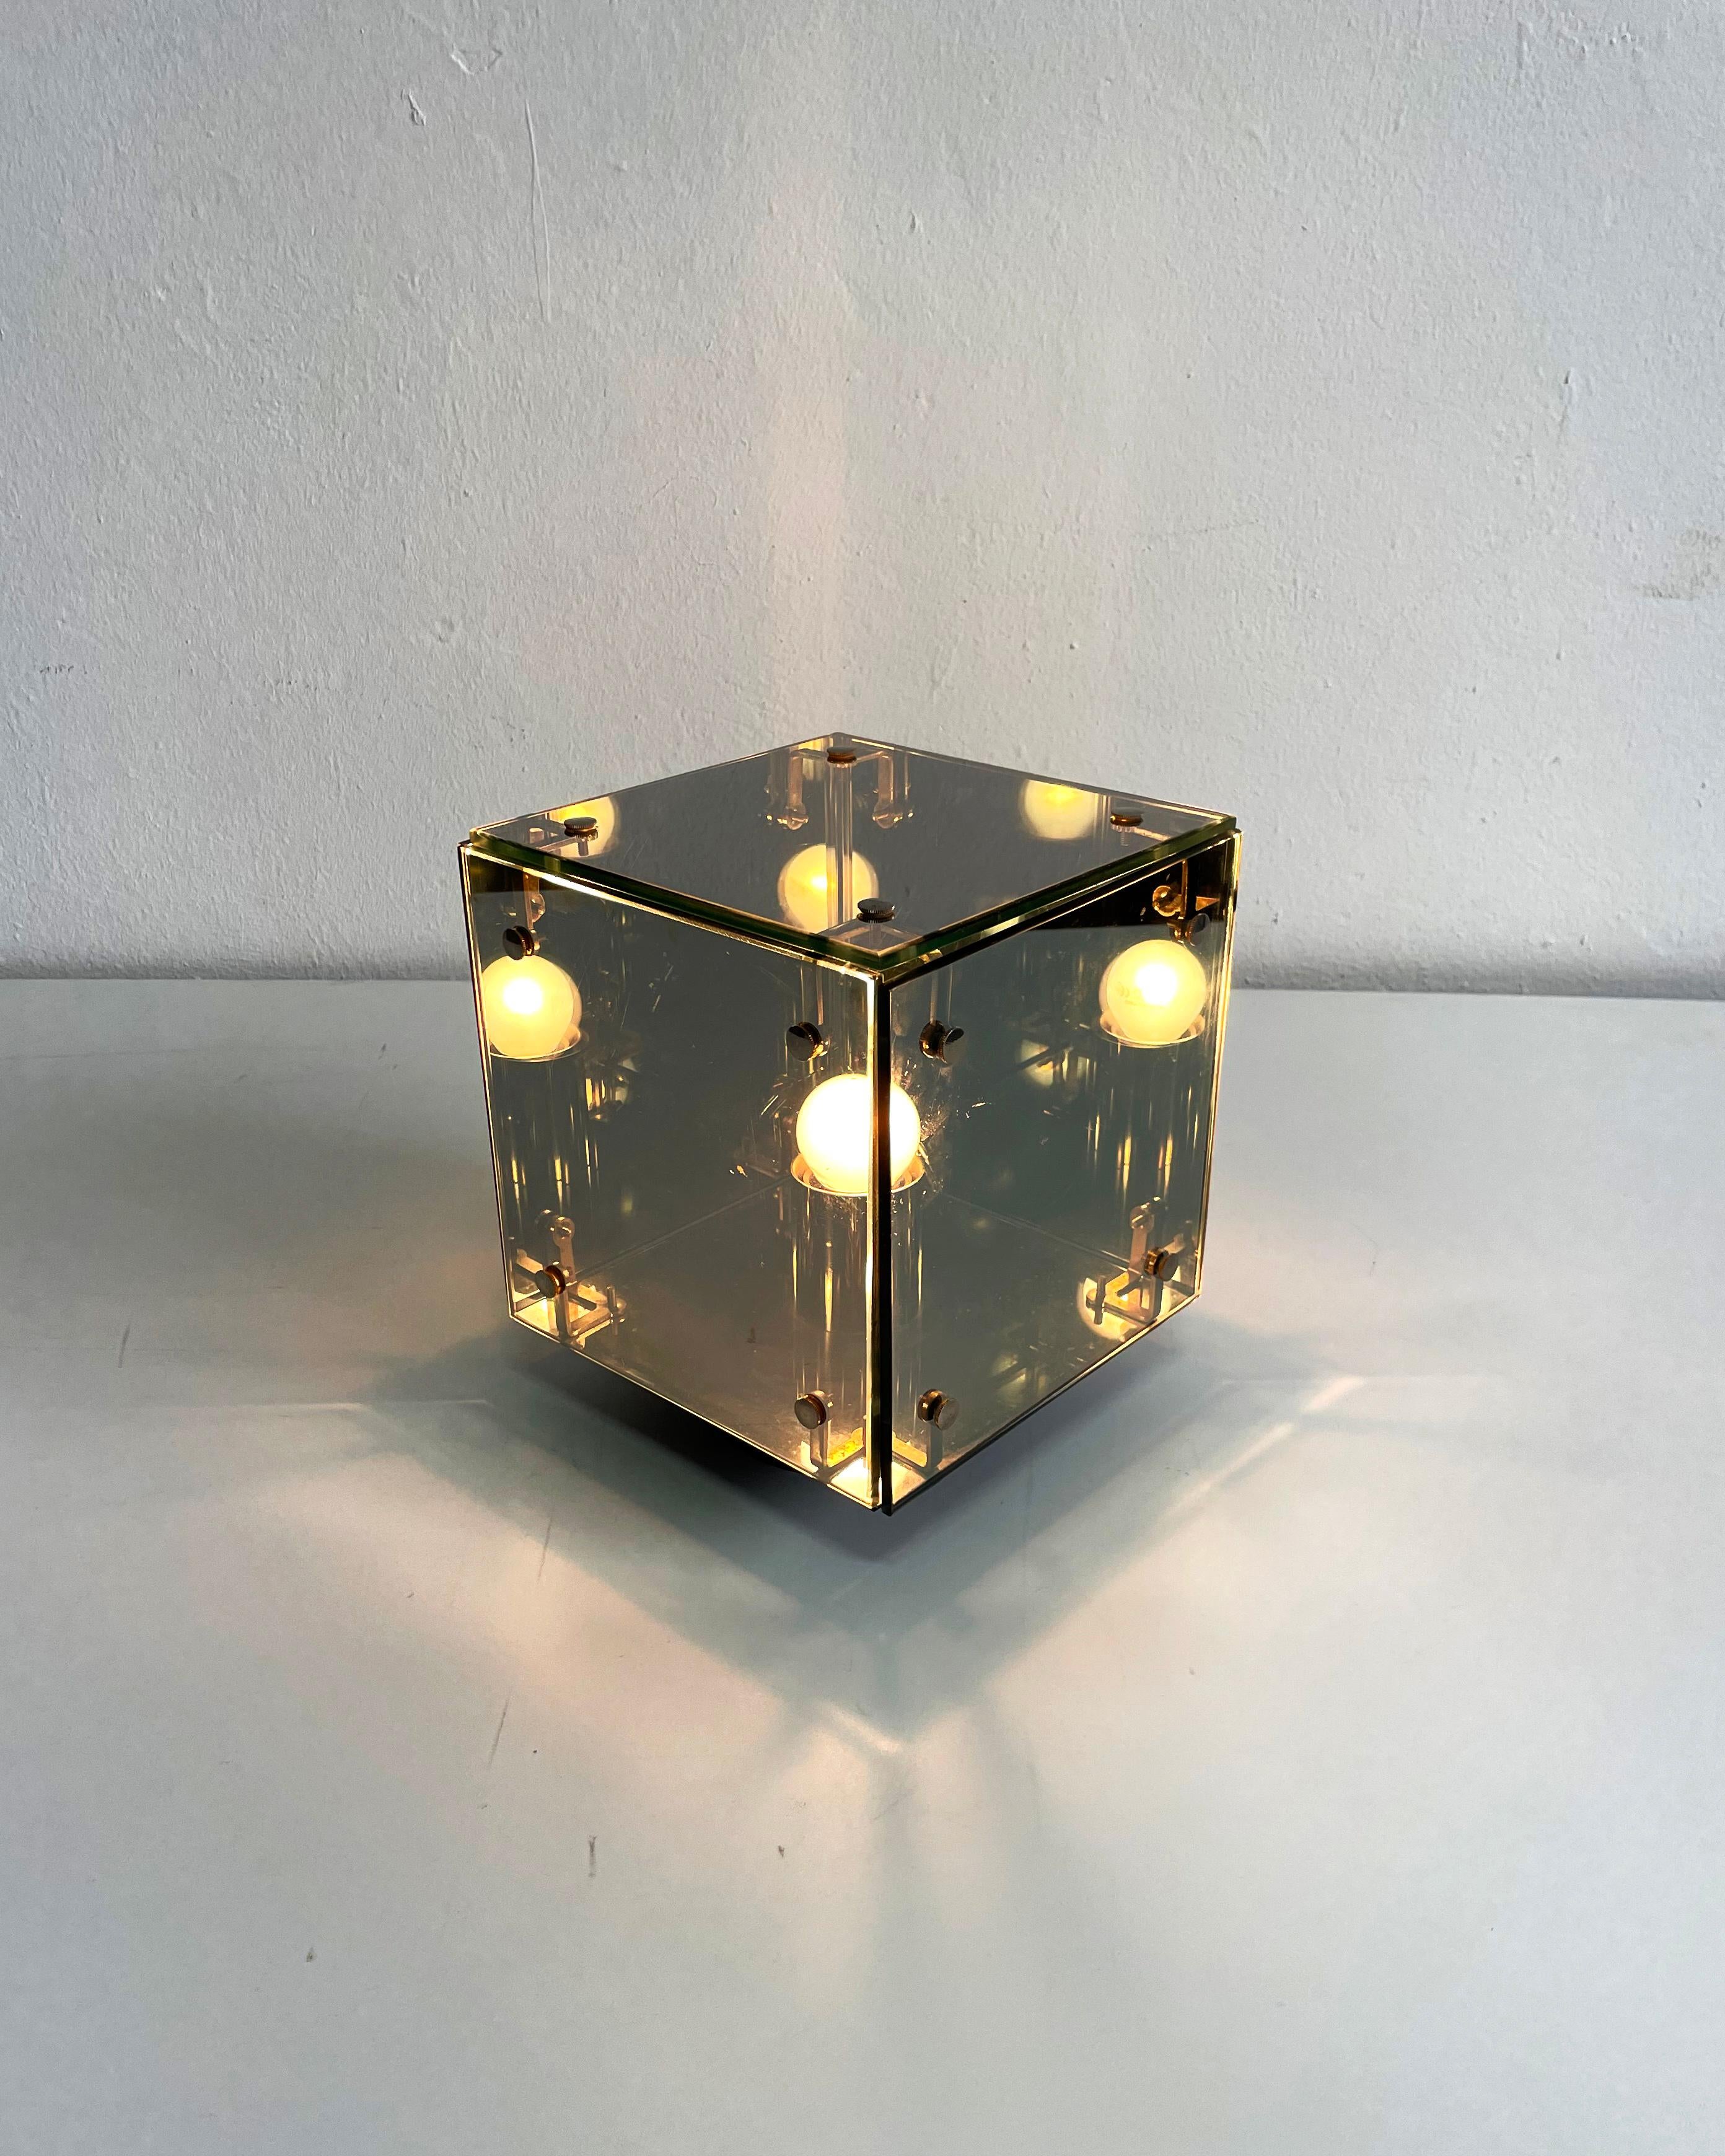 Lampe de table Prismar par le groupe de design italien Studio A.R.D.I.T.I. pour Nucleo Sormani, 1970
La version Piccola, 24,7 x 21,5 x 21,5 cm, avec une marque de détérioration sur l'un des panneaux de verre.

Tampon du fabricant sur la face